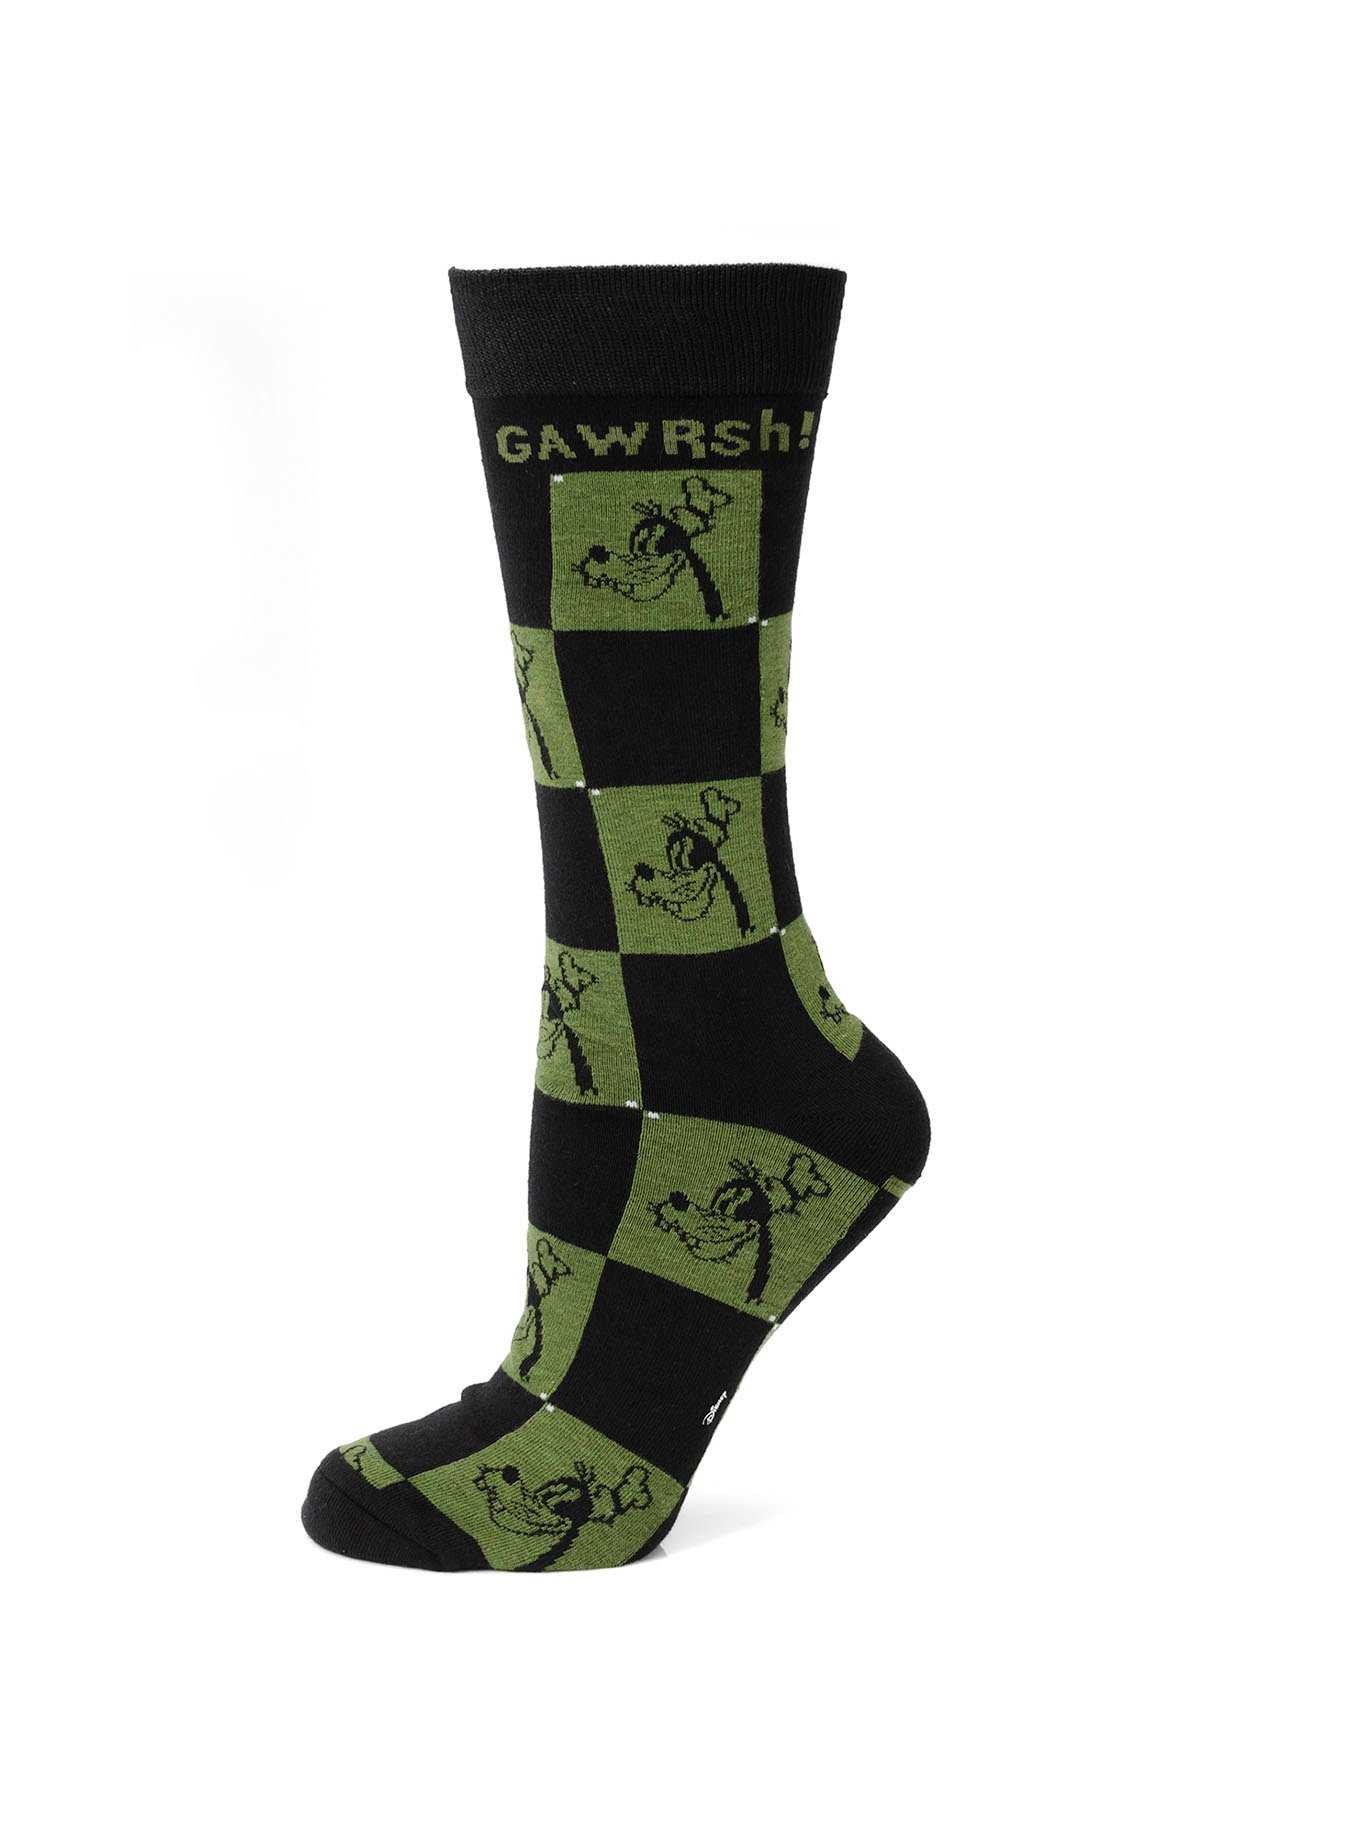 Disney Goofy "Gawrsh!" Black & Green Socks, , hi-res